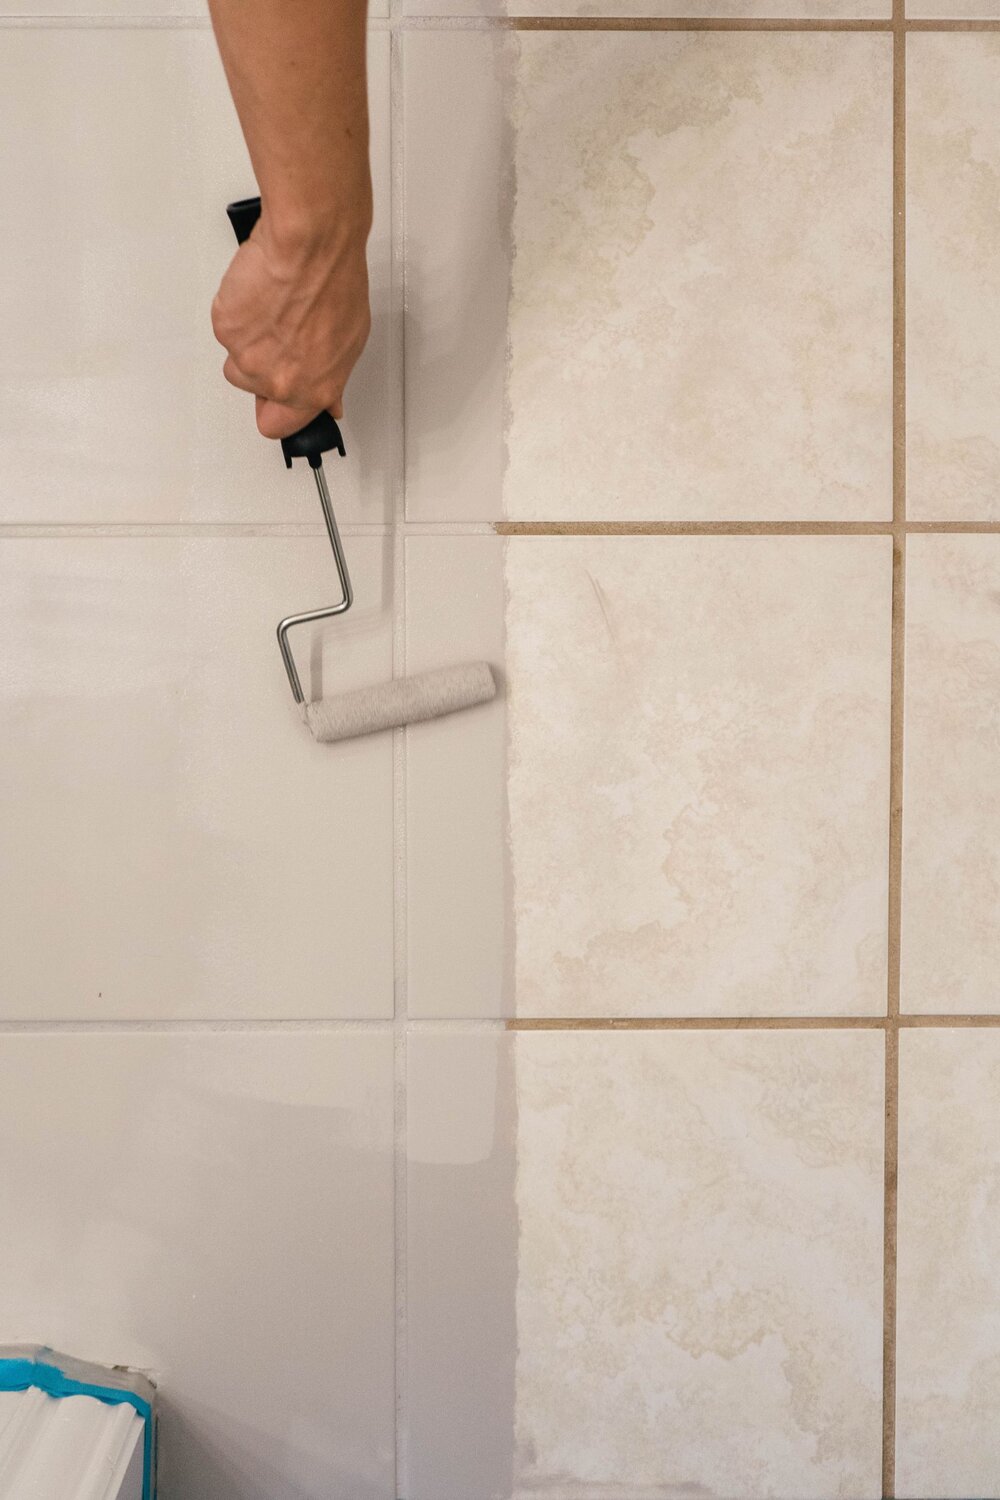 Diy How To Paint Ceramic Floor Tile, Painting Tile In Bathroom